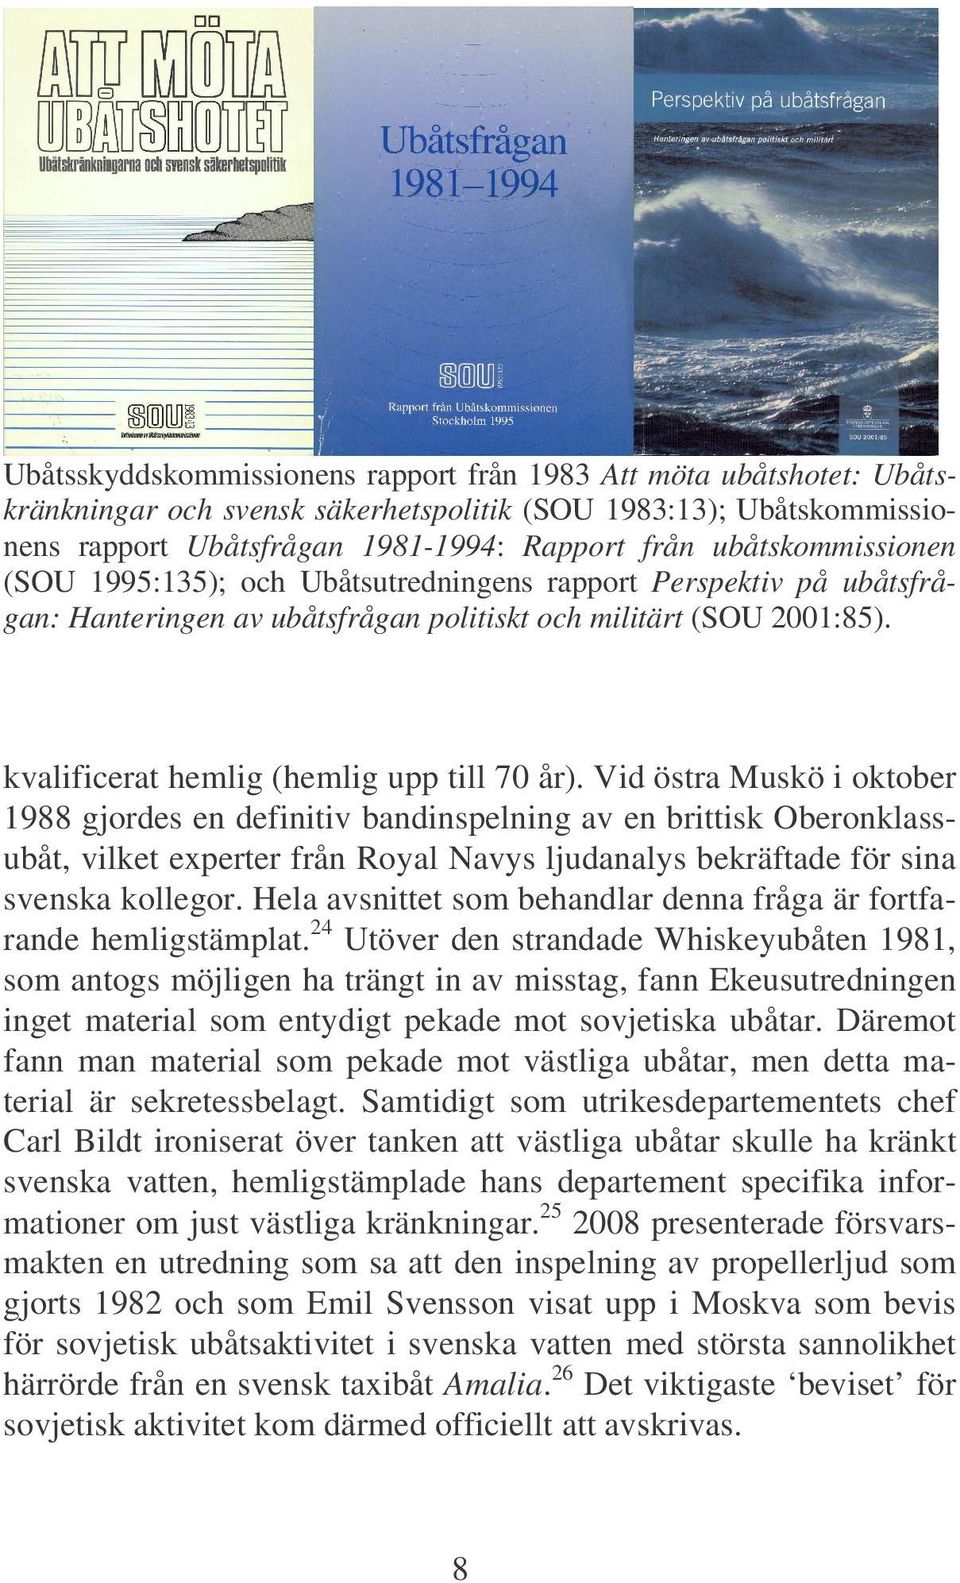 Vid östra Muskö i oktober 1988 gjordes en definitiv bandinspelning av en brittisk Oberonklassubåt, vilket experter från Royal Navys ljudanalys bekräftade för sina svenska kollegor.